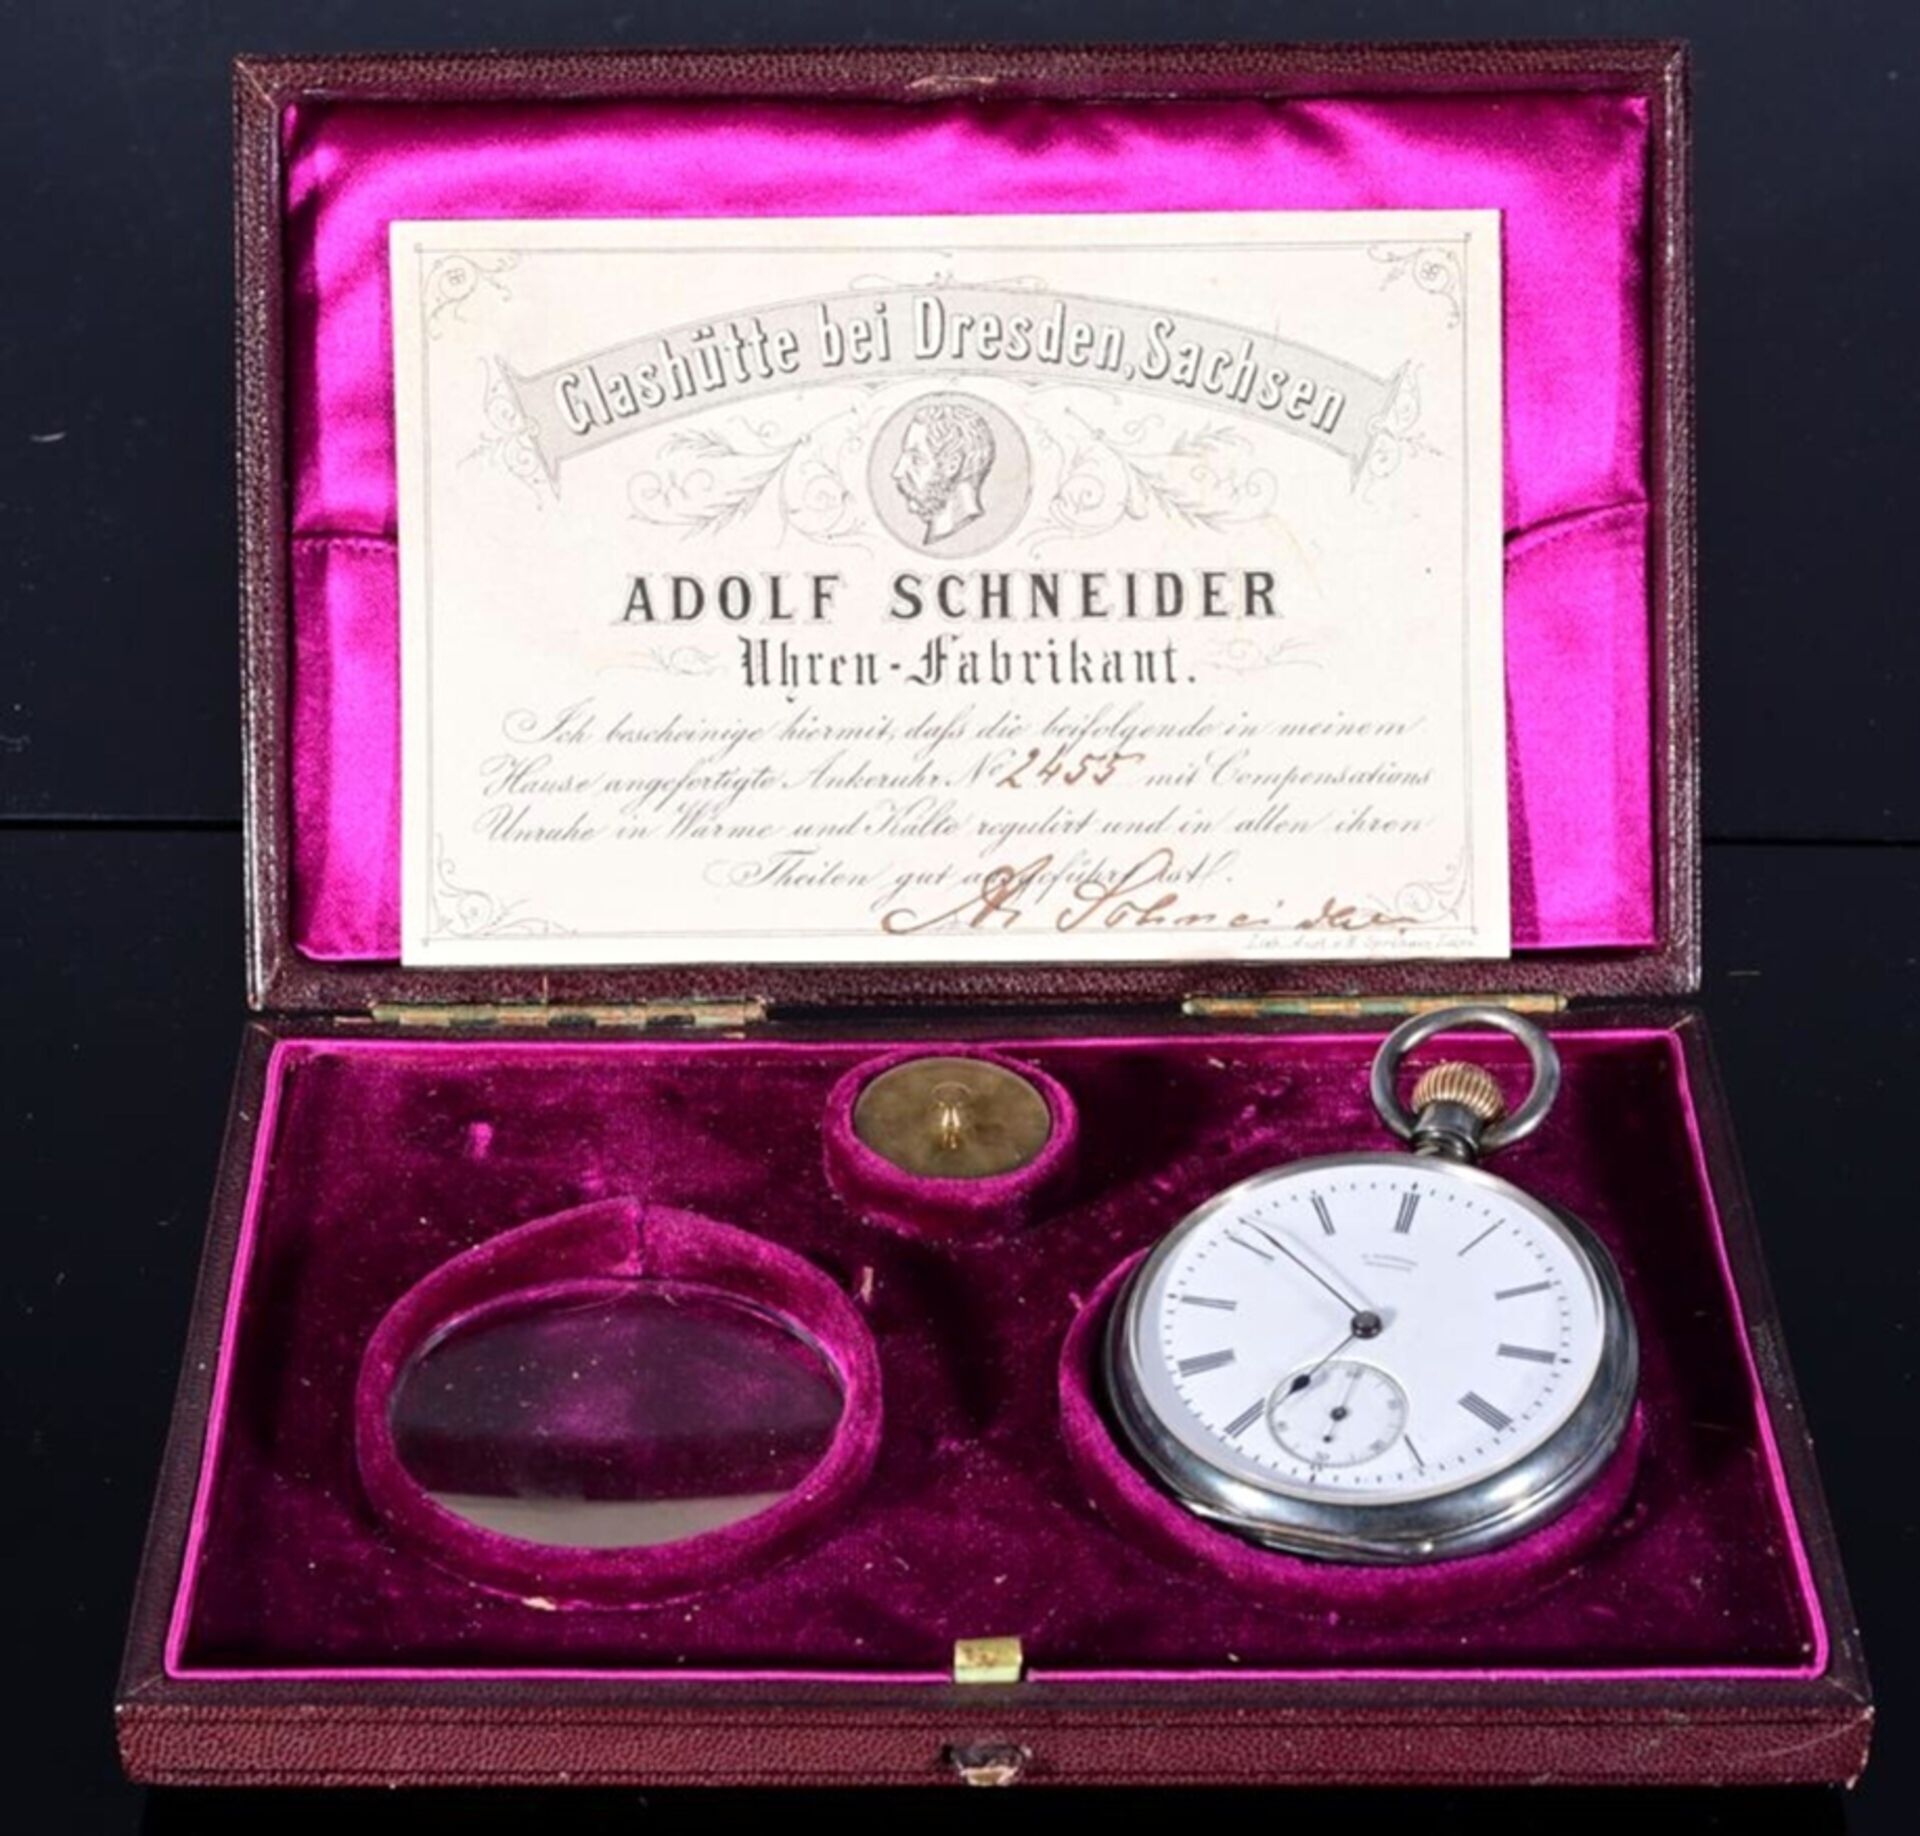 Seltene, offene Herrentaschenuhr von "A.SCHNEIDER GLASHÜTTE" der 1870er Jahre, in originaler Schatu